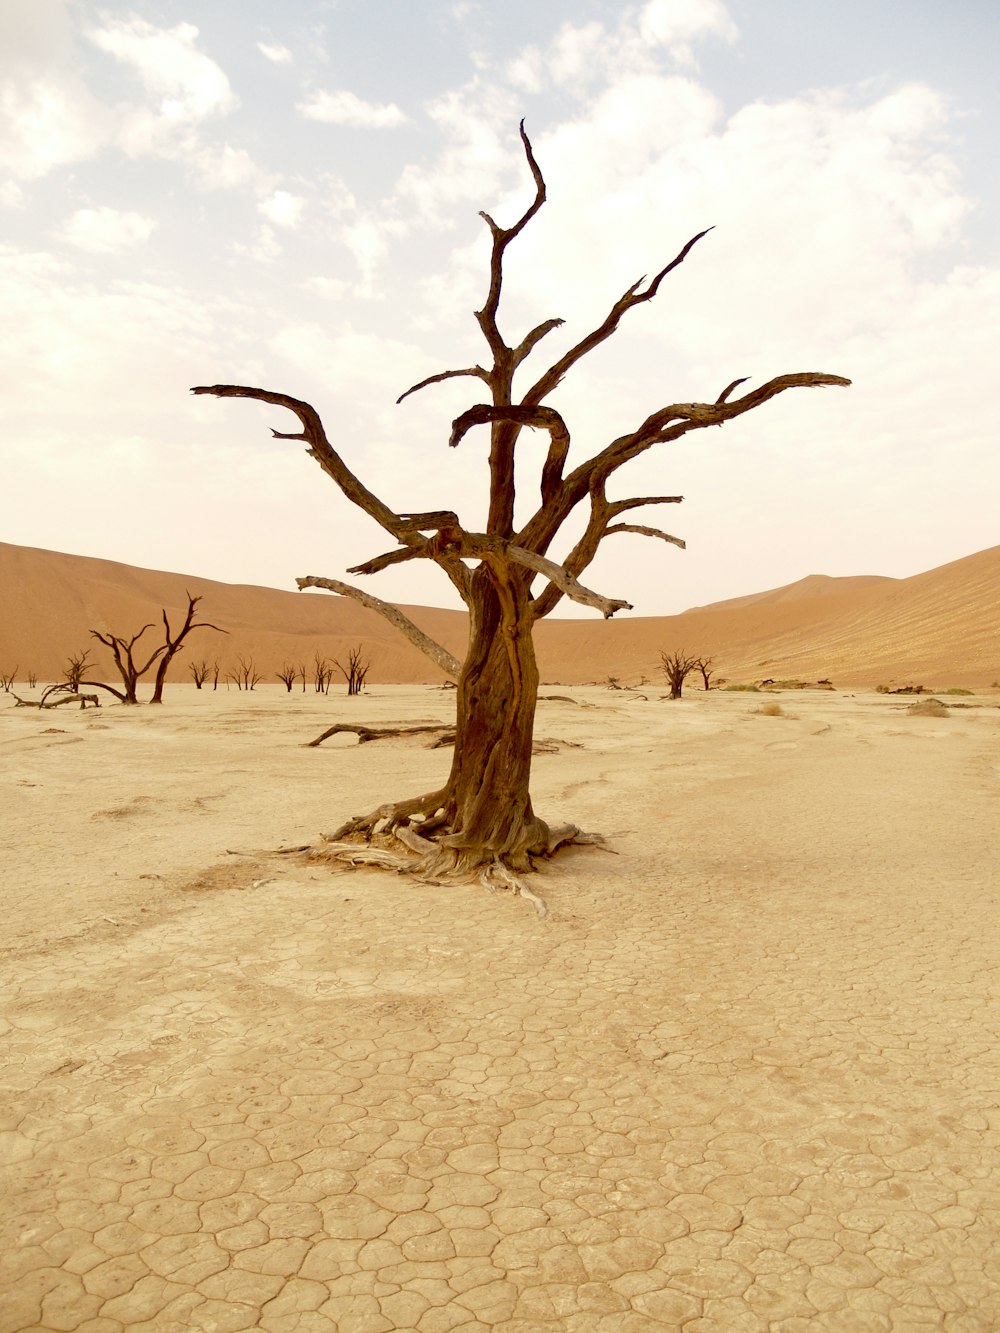 albero senza foglie sul deserto durante il giorno